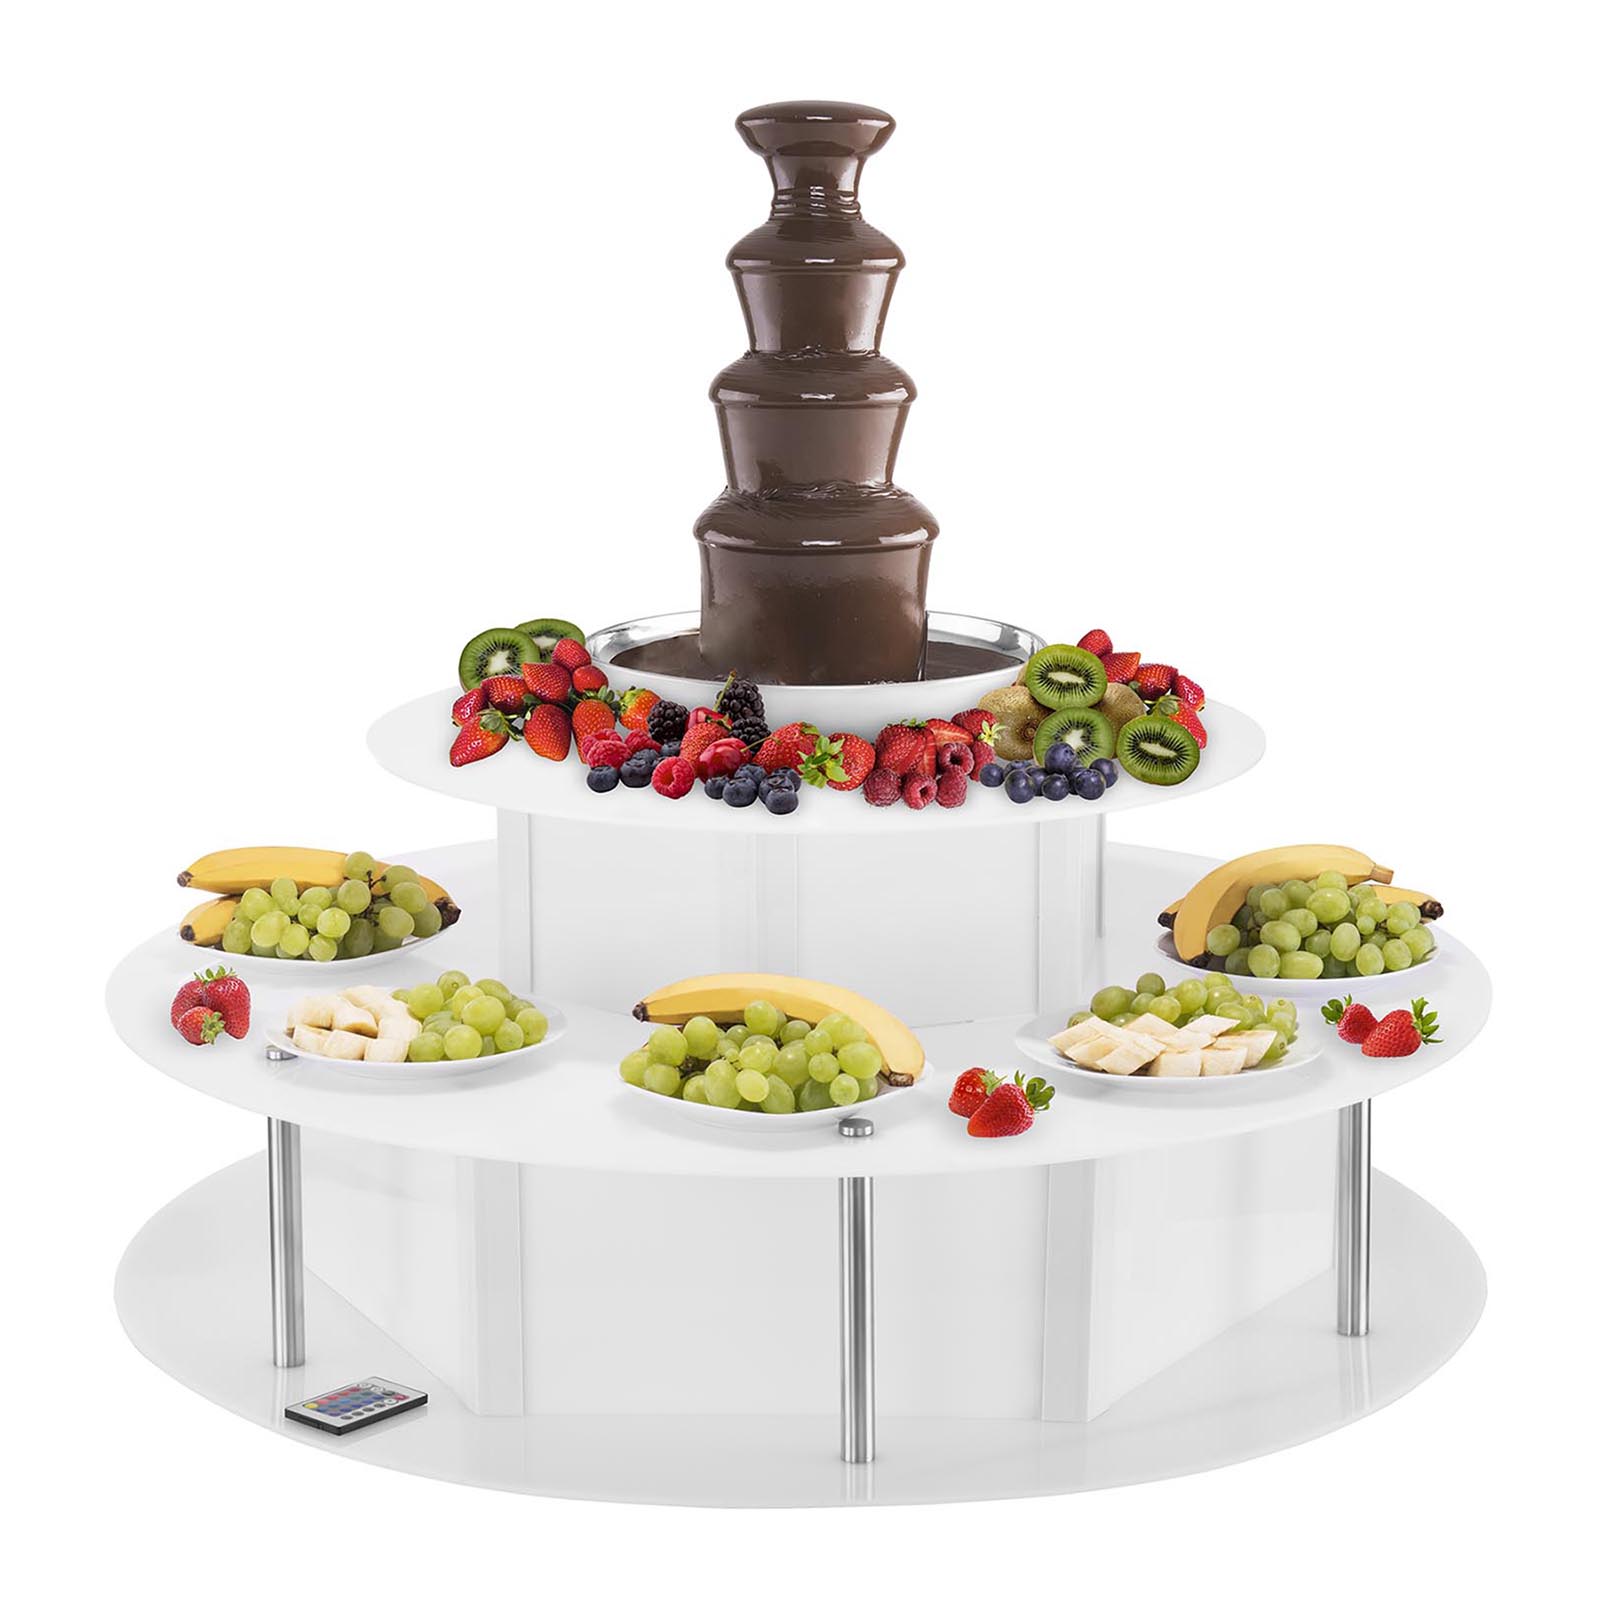 Csokoládé szökőkút készlet - 4 emeletes - 6 kg - világító asztallal